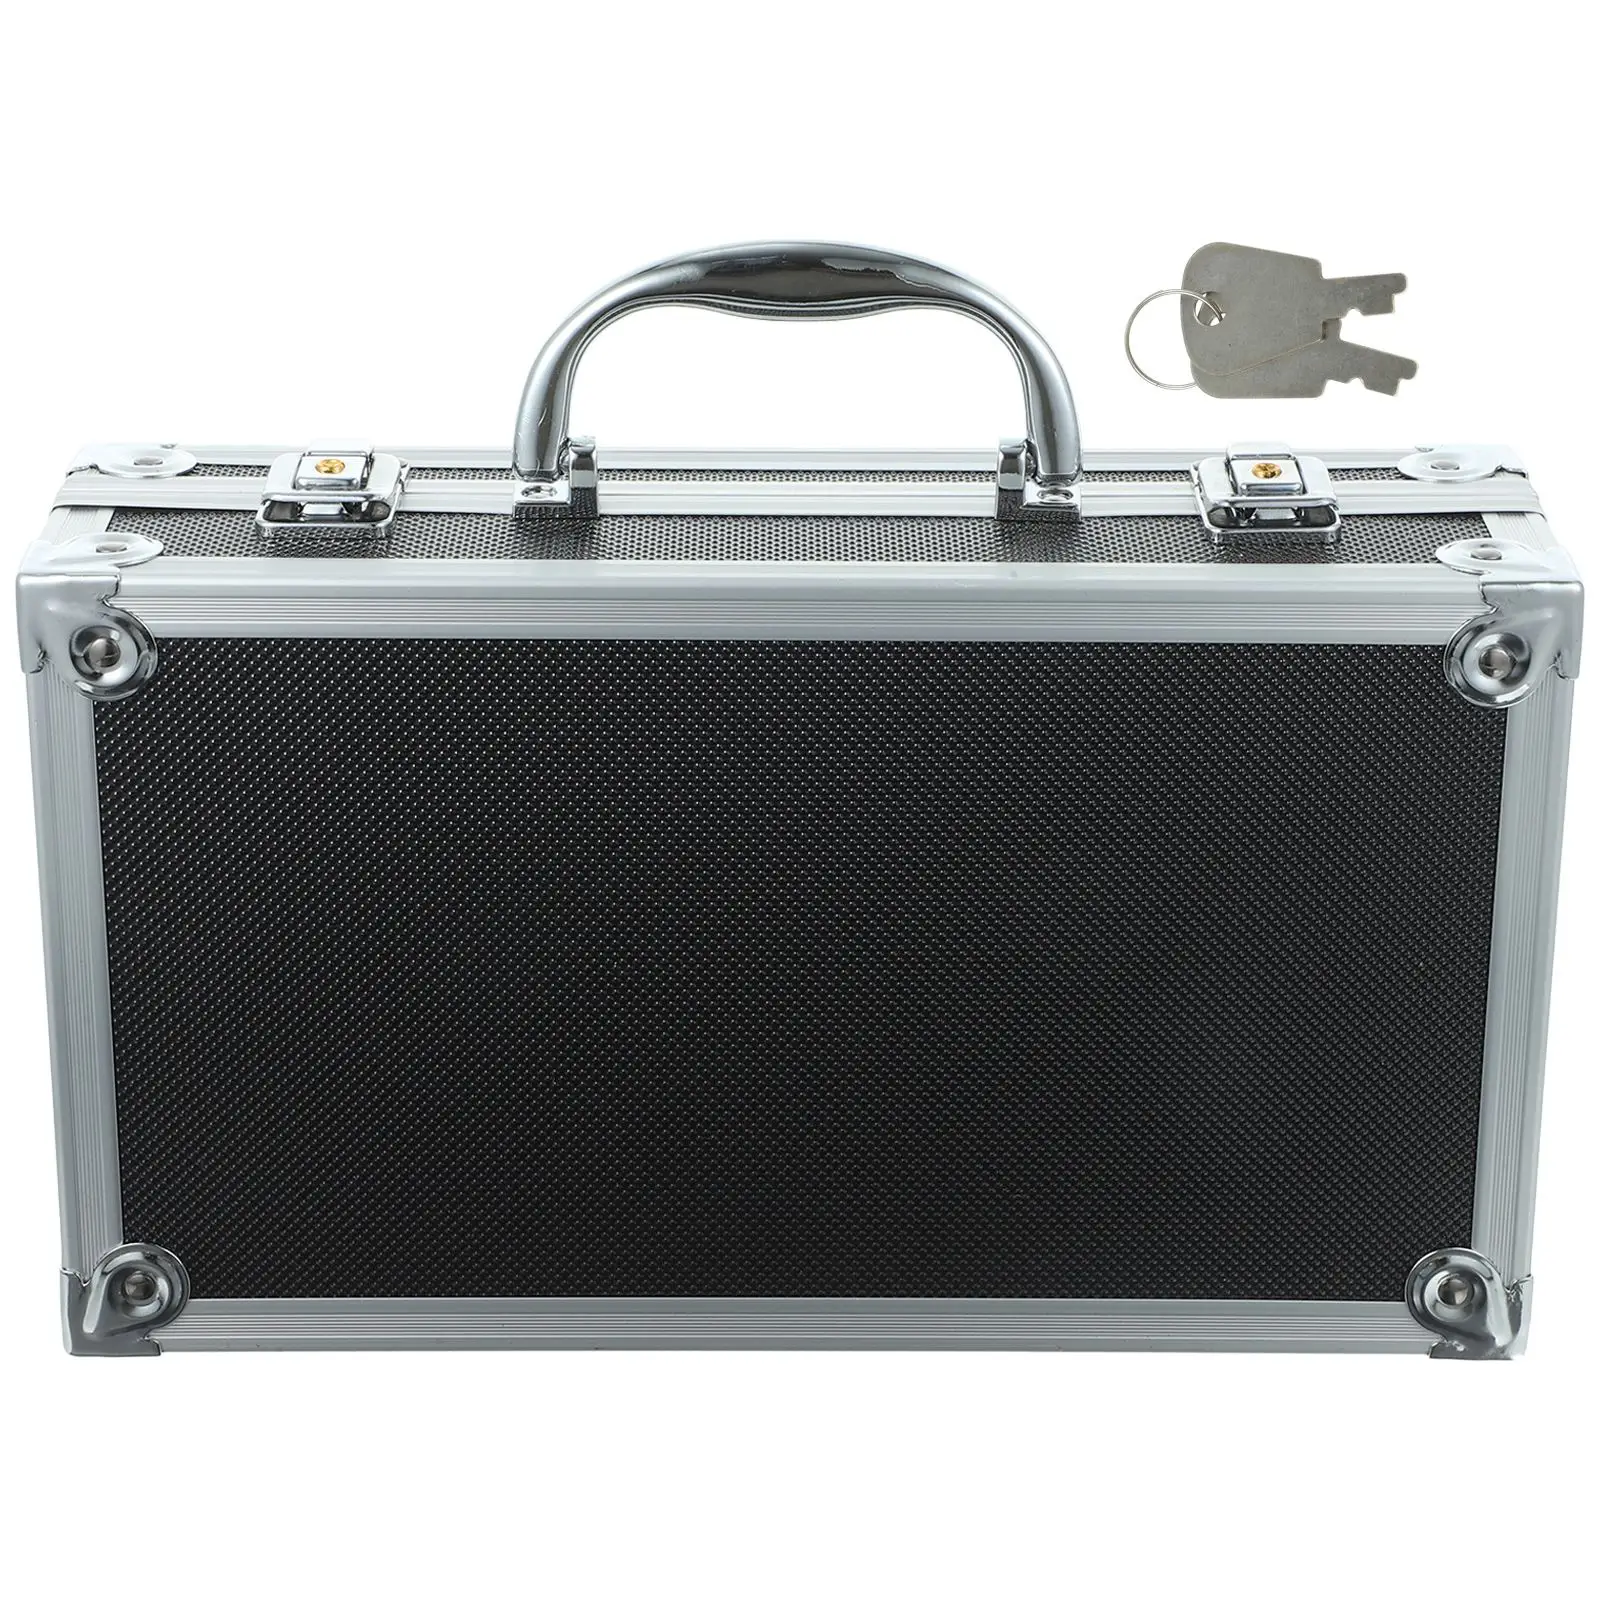 

Алюминиевый портфель, алюминиевый ящик для инструментов, аптечка для инструментов, переносной чемодан, фланелевый многофункциональный чехол